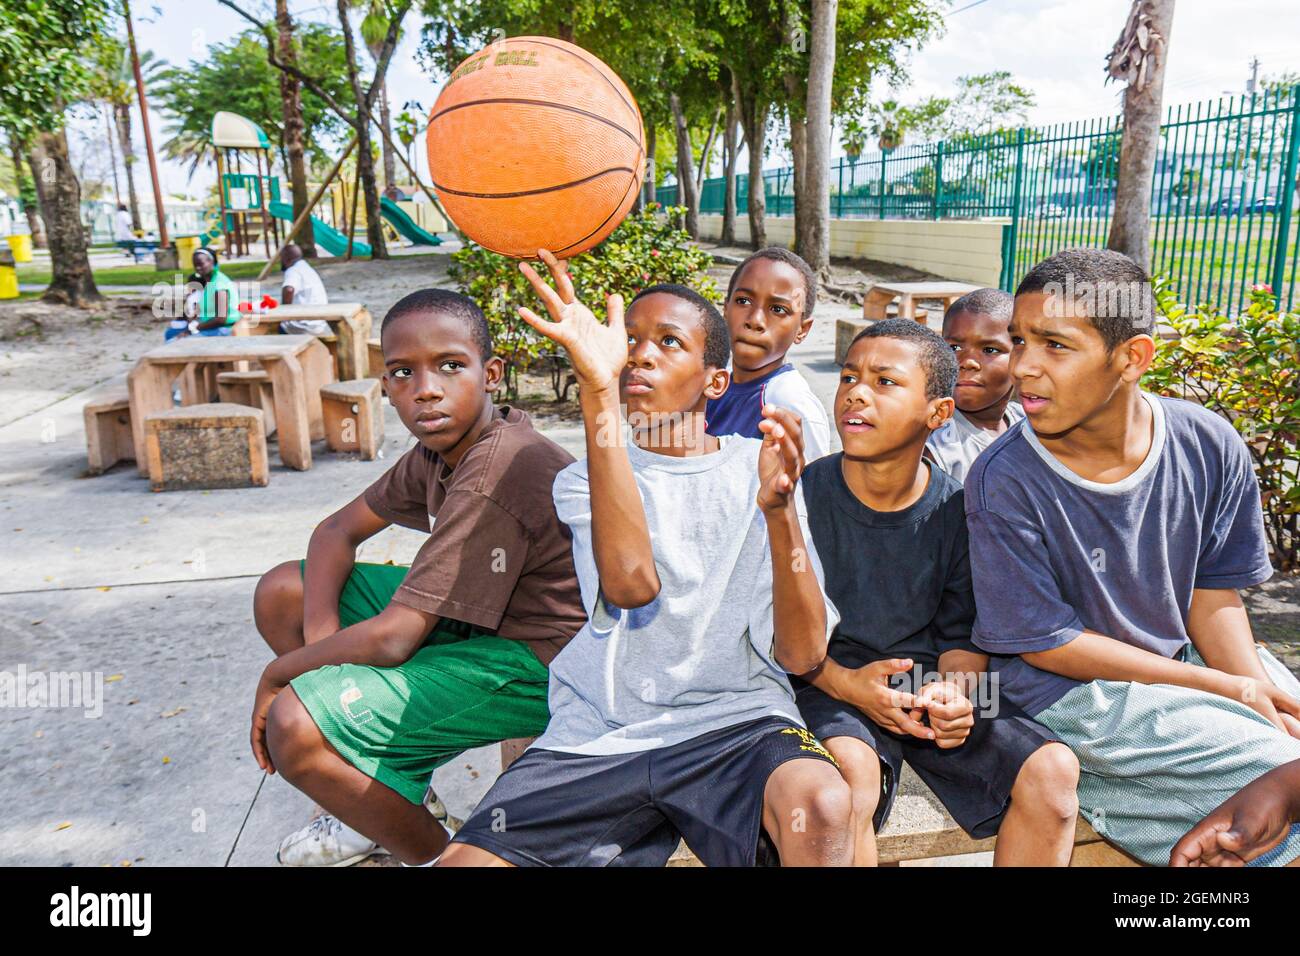 Miami Florida,Liberty City African Square Park Inner city,Black boys maschio bambini gruppo amici parco giochi,mostrando off basket bilanciamento spin Foto Stock